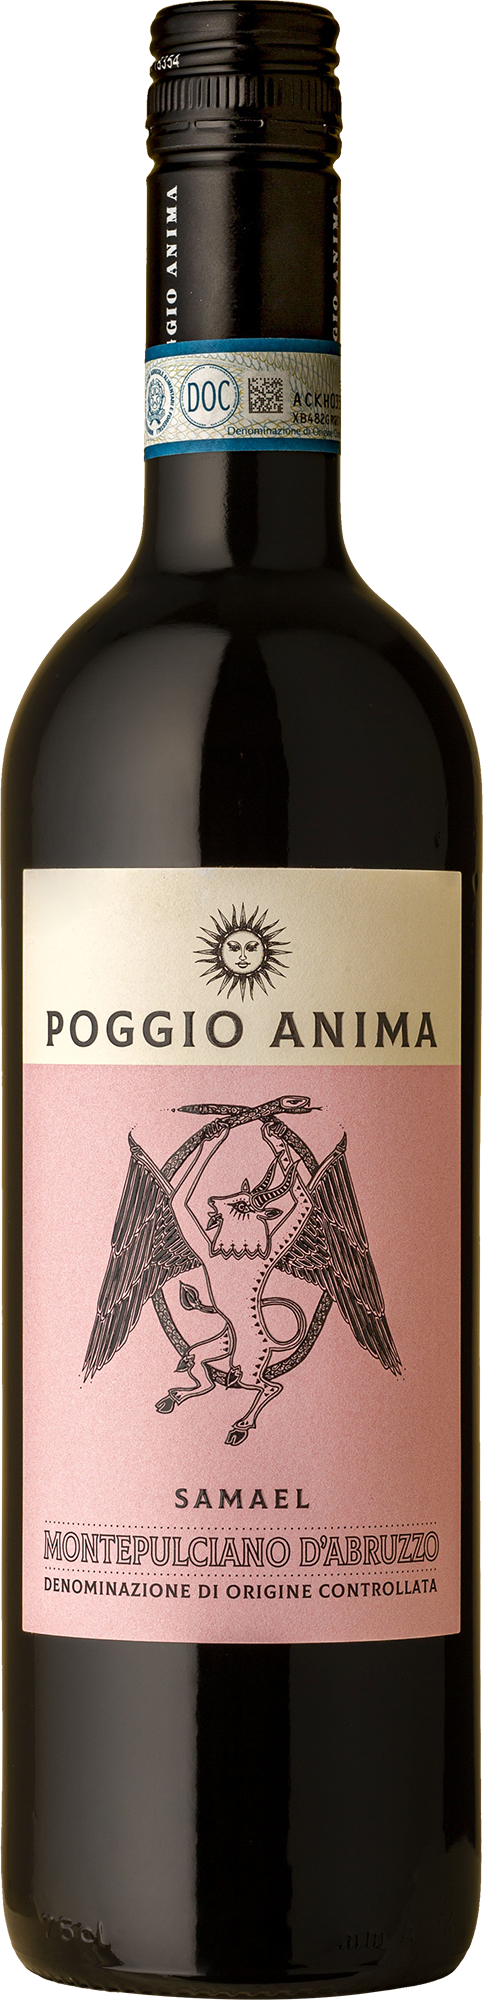 Poggio Anima - Montepulciano d'Abruzzo 2020 Red Wine